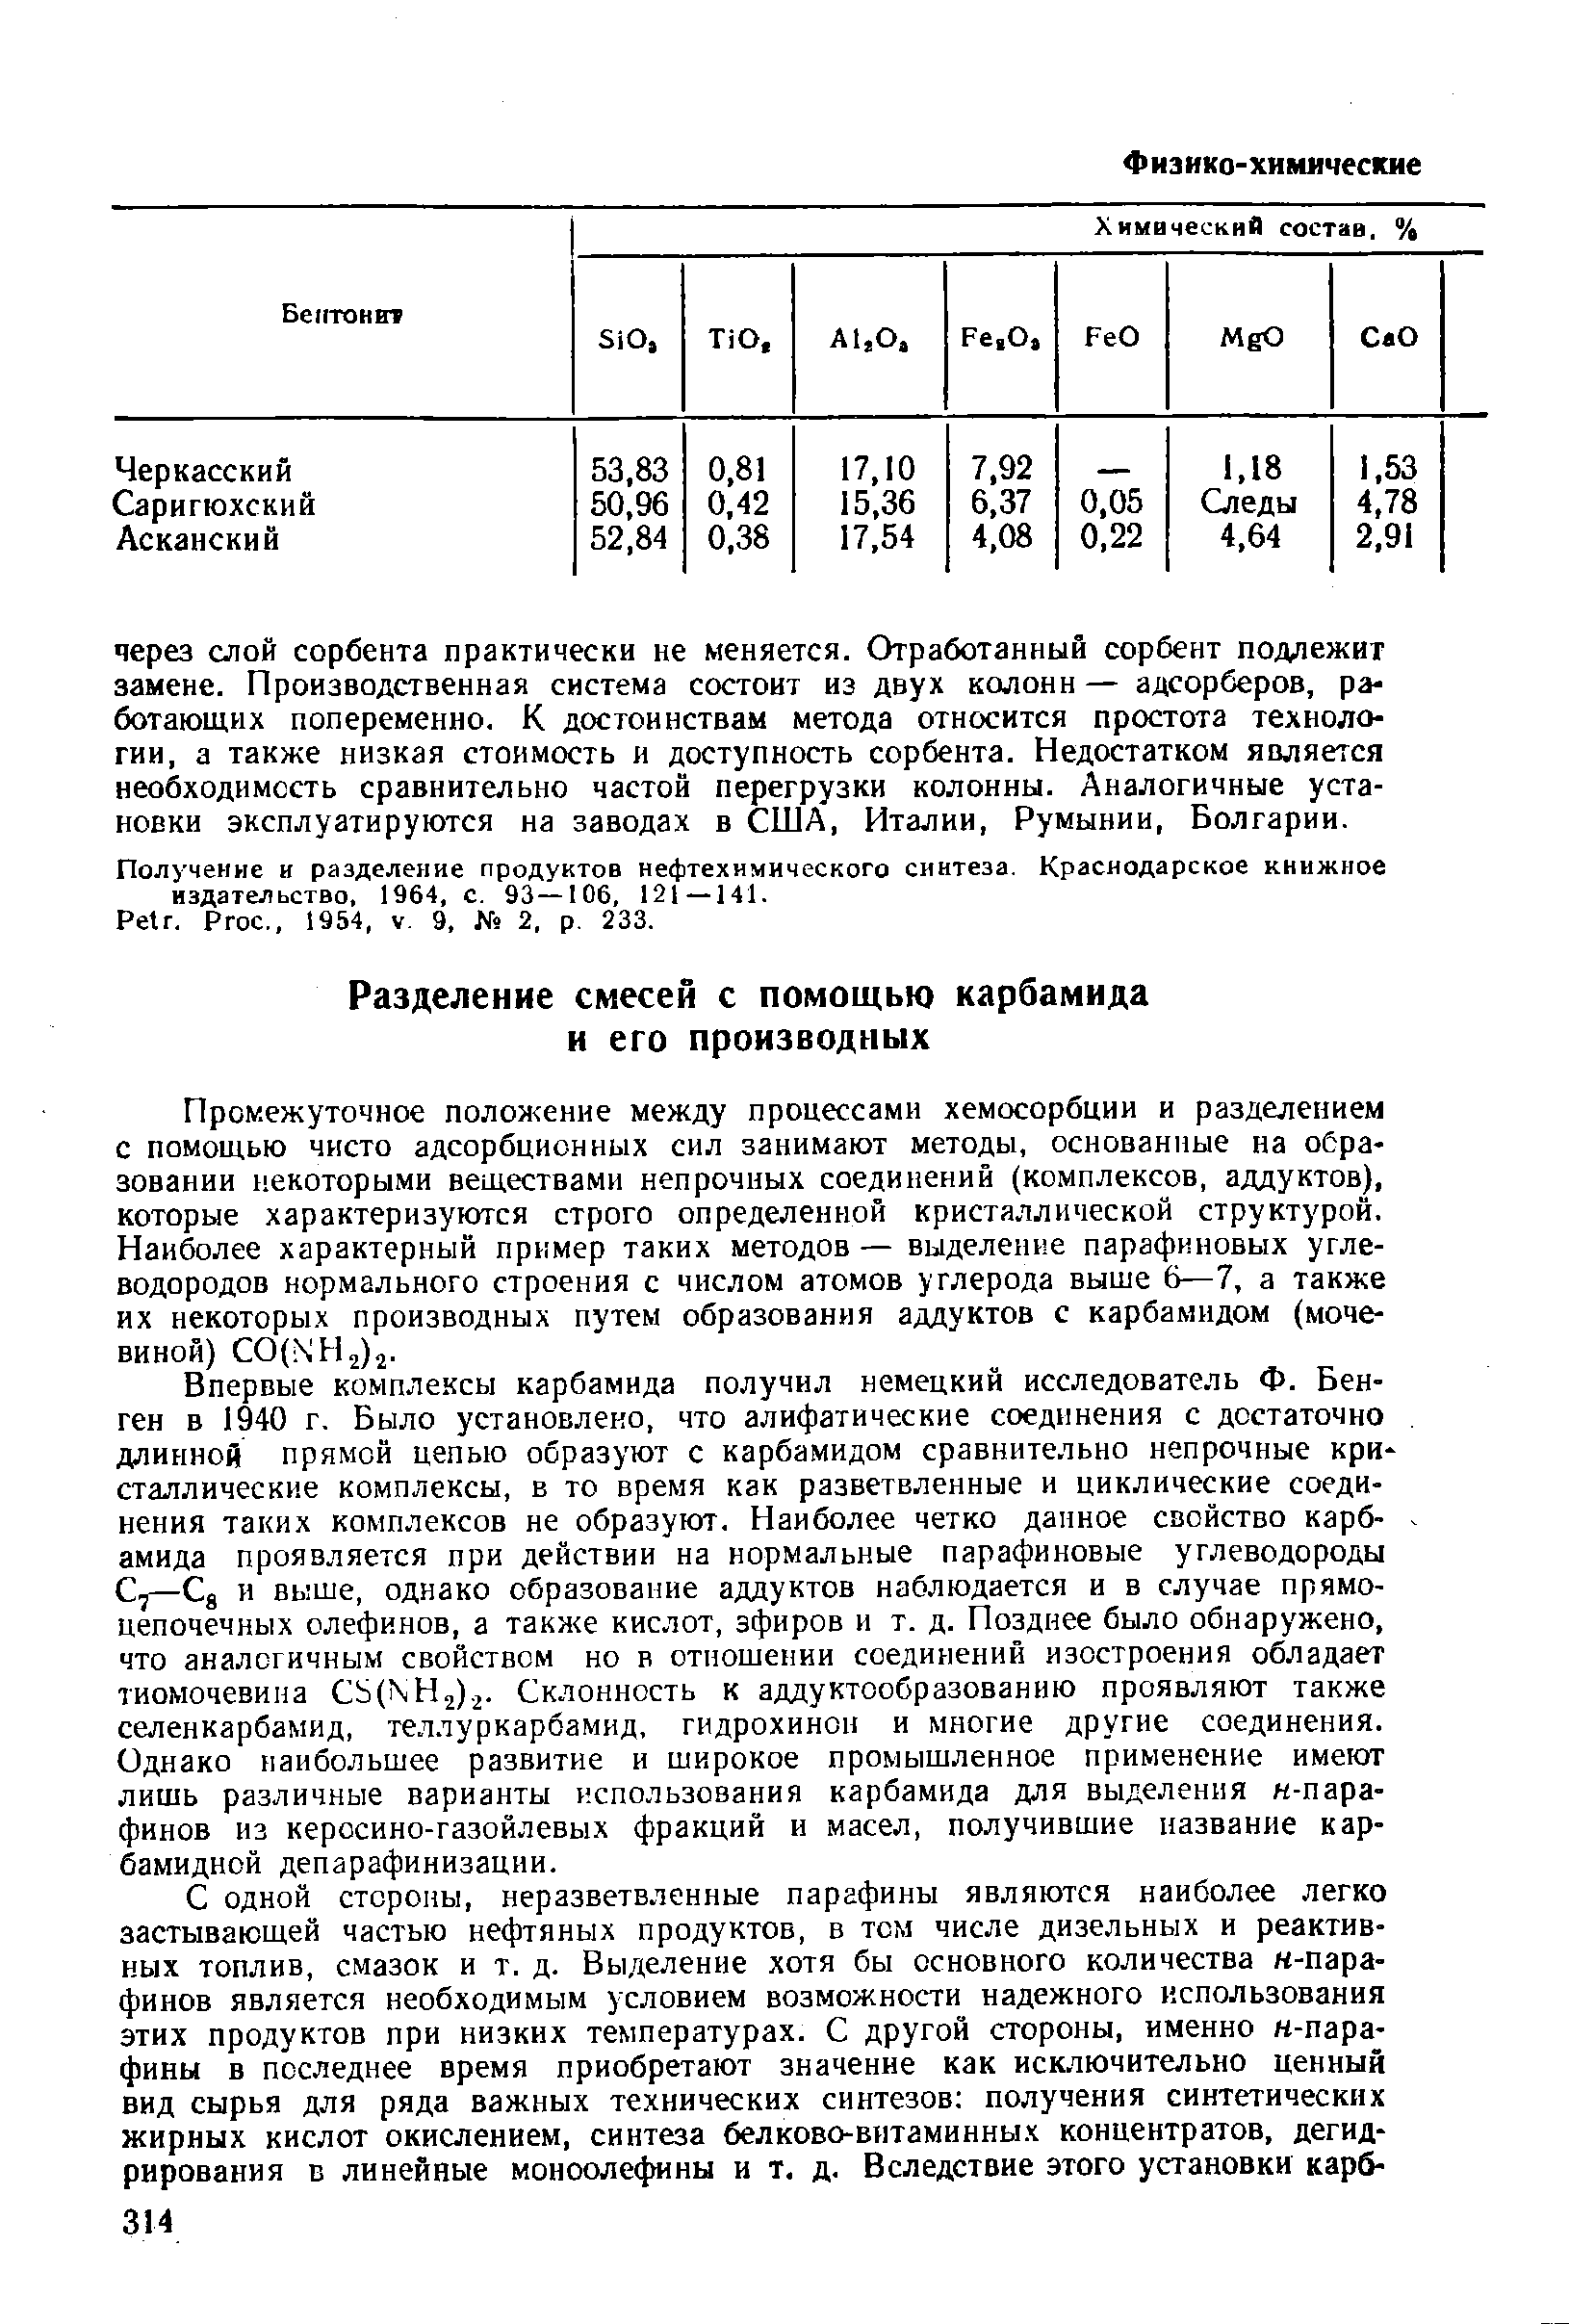 Получение и разделение продуктов нефтехимического синтеза. Краснодарское книжное издательство, 1964, с. 93—106, 121 — 141.